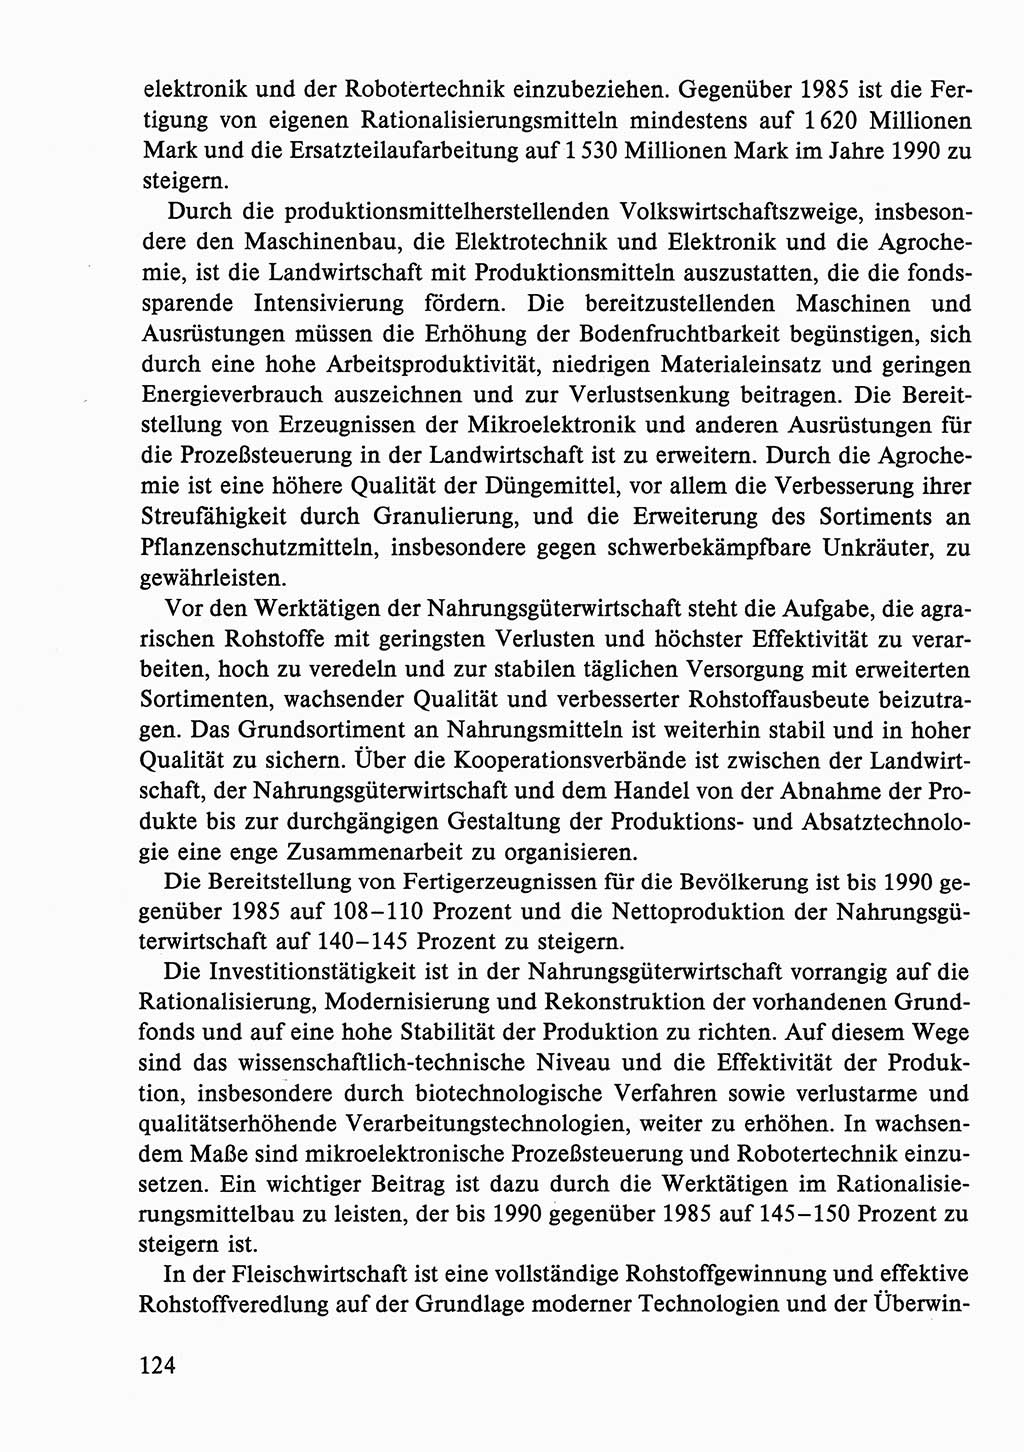 Dokumente der Sozialistischen Einheitspartei Deutschlands (SED) [Deutsche Demokratische Republik (DDR)] 1986-1987, Seite 124 (Dok. SED DDR 1986-1987, S. 124)